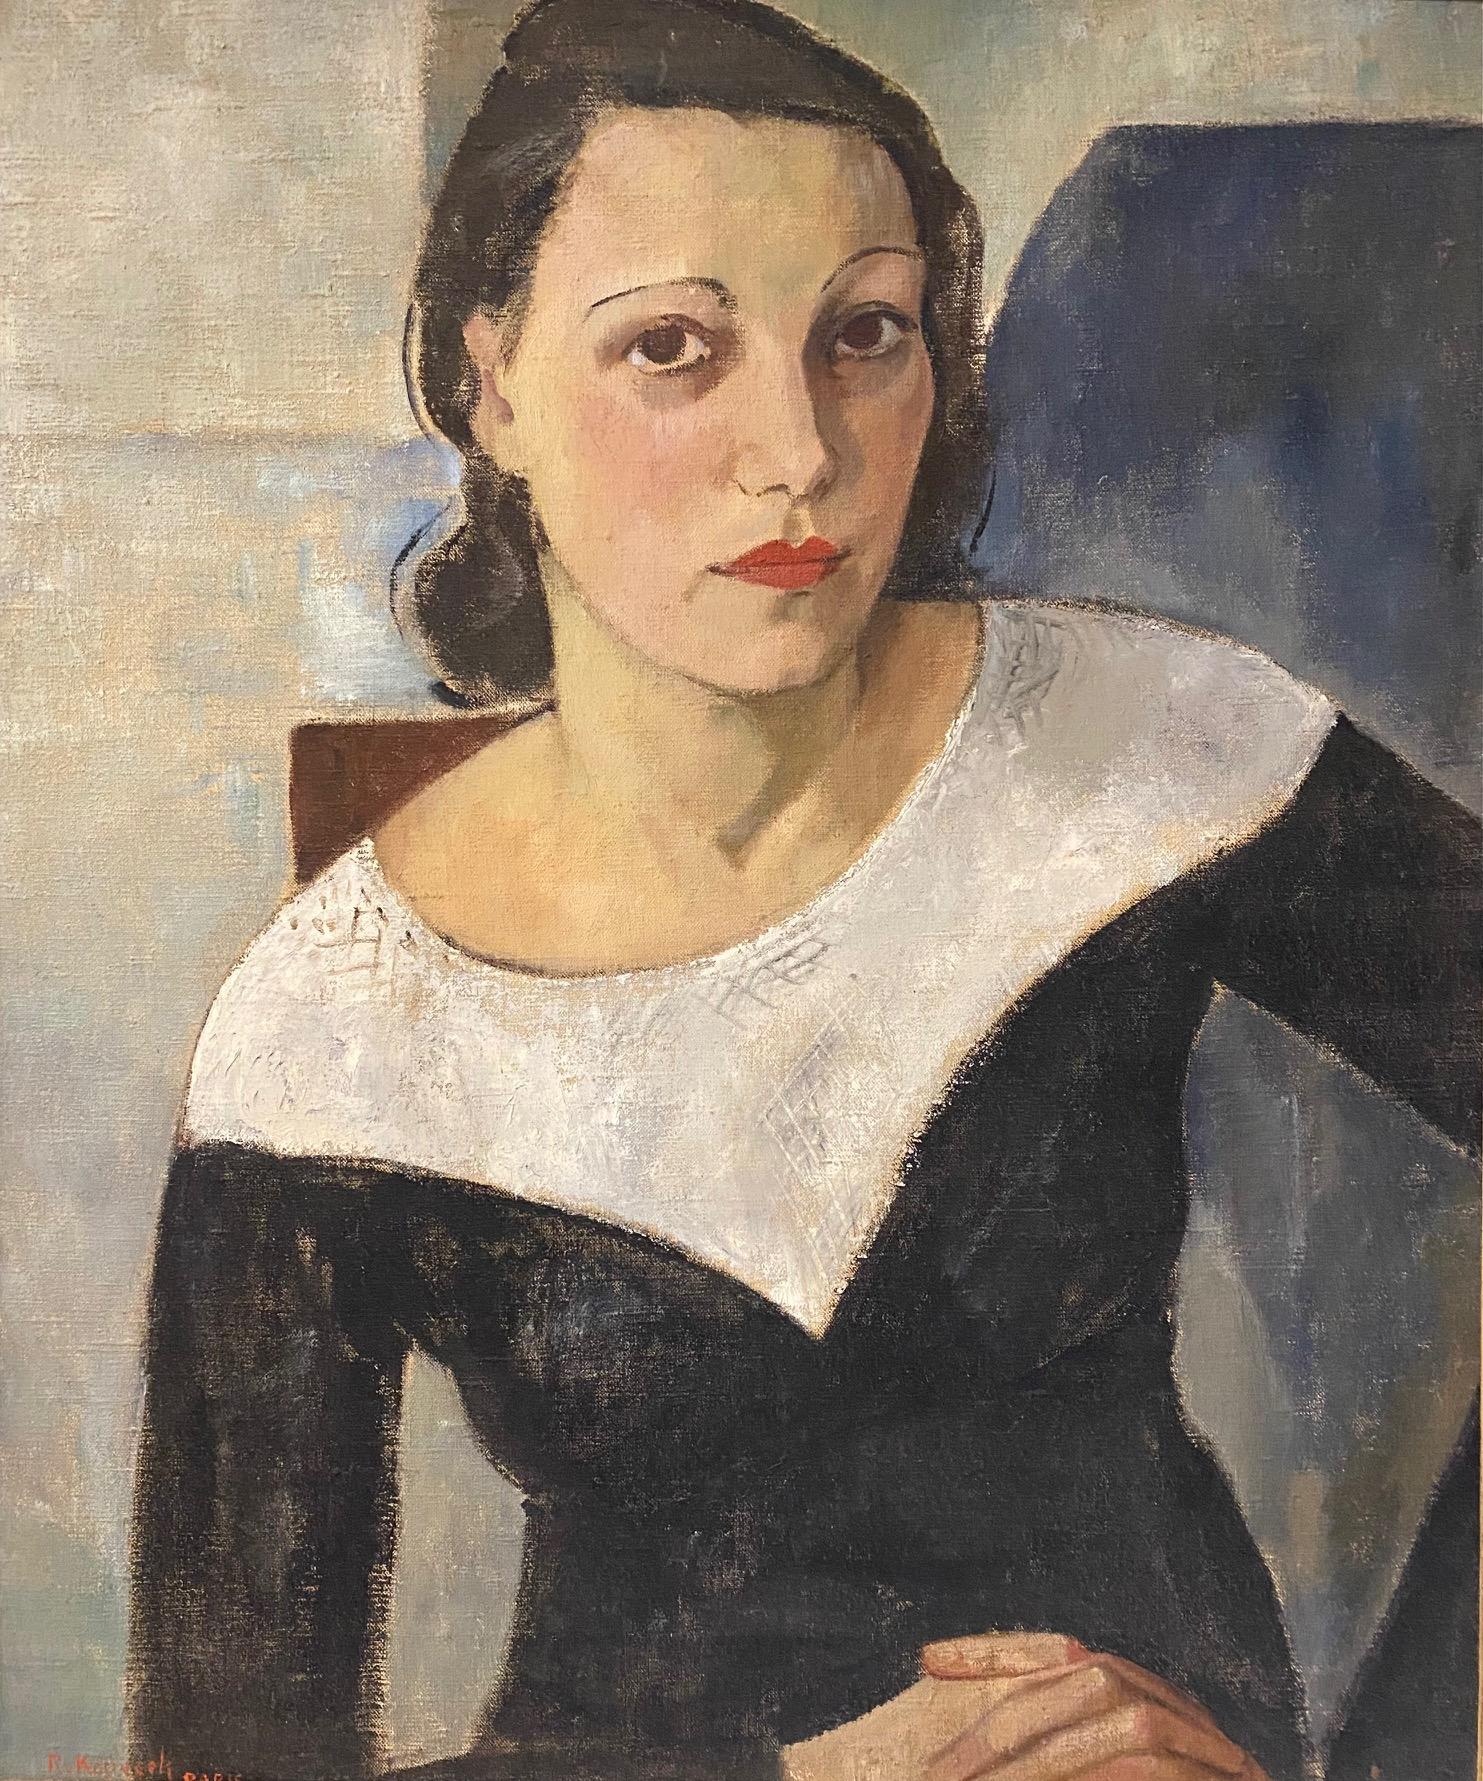 Woman portrait by RV. Kopecek - Oil on canvas 53x63 cm - Painting by RV. KOPECEK